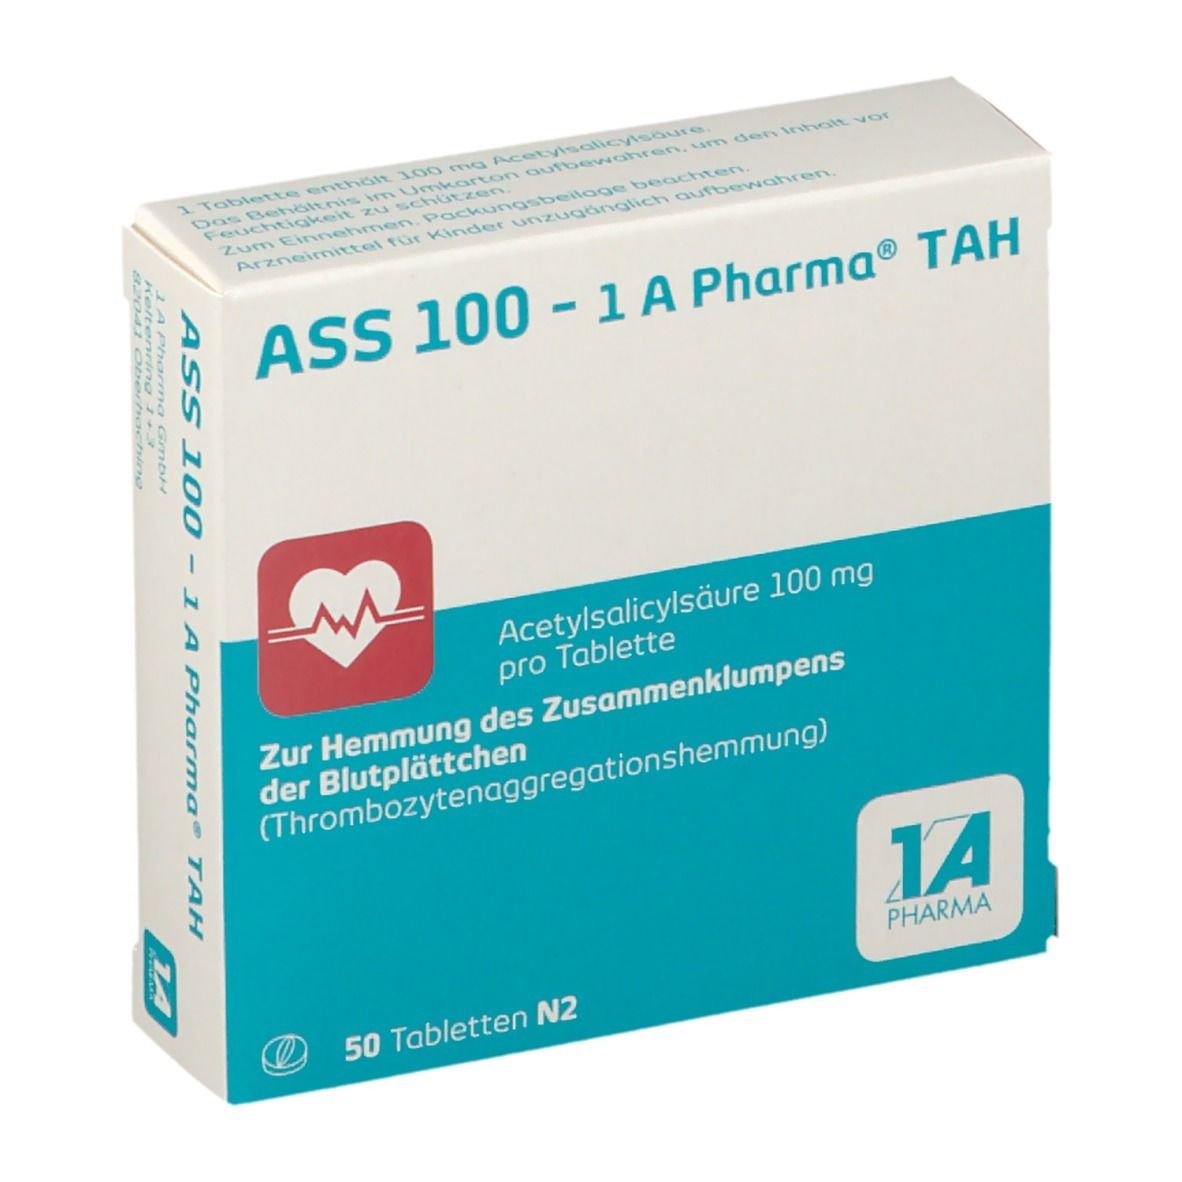 ASS 100 - 1 A Pharma® TAH